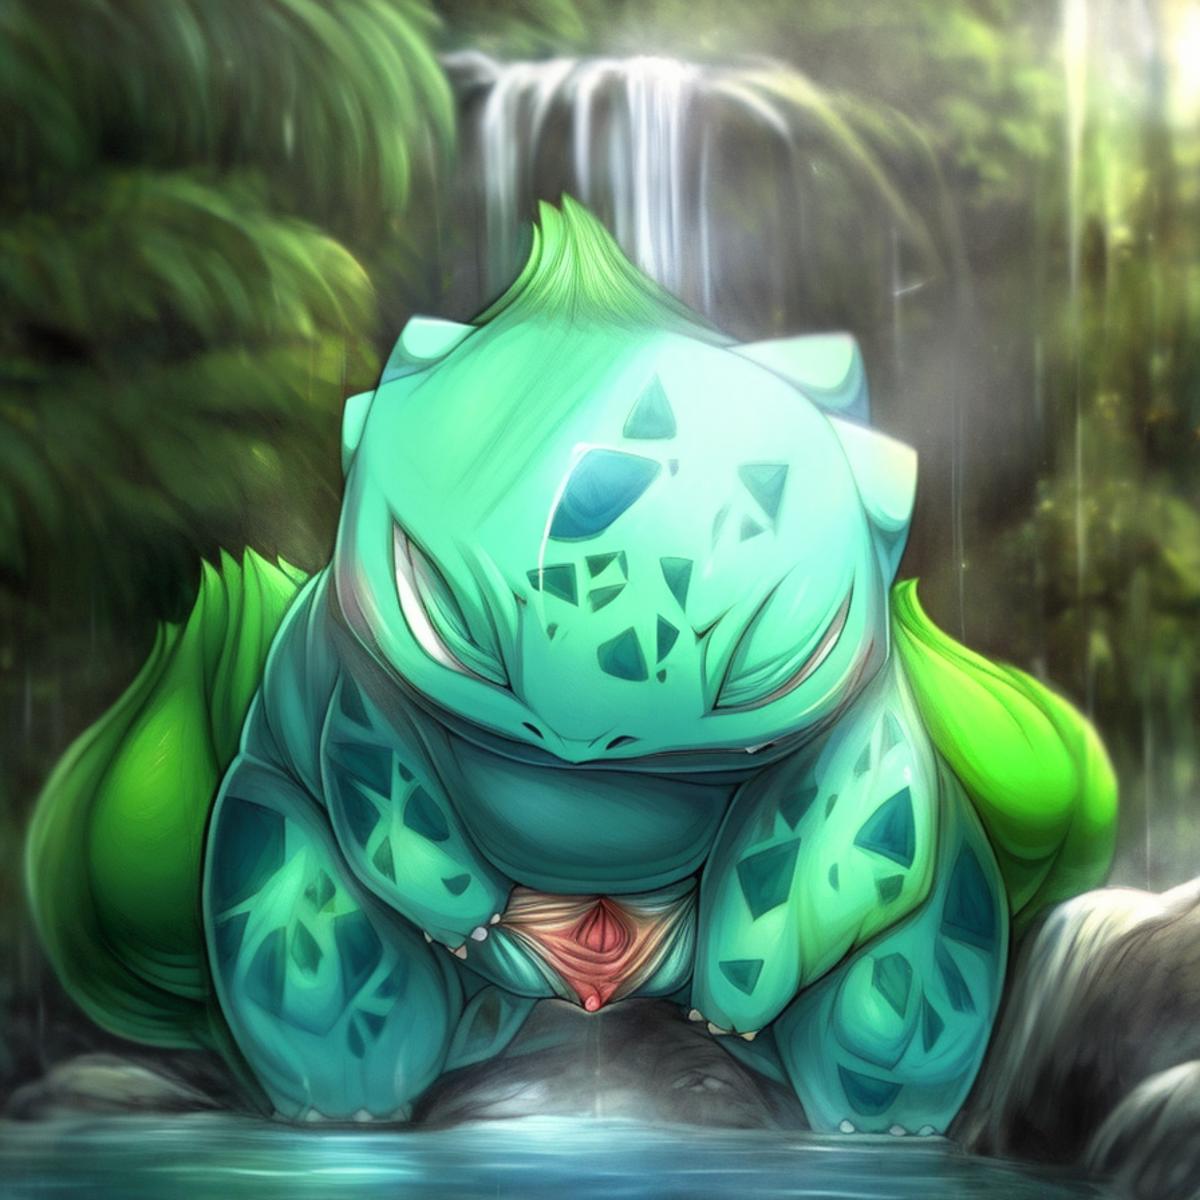 Bulbasaur (Pokemon) (Pokedex #0001) image by ivragi